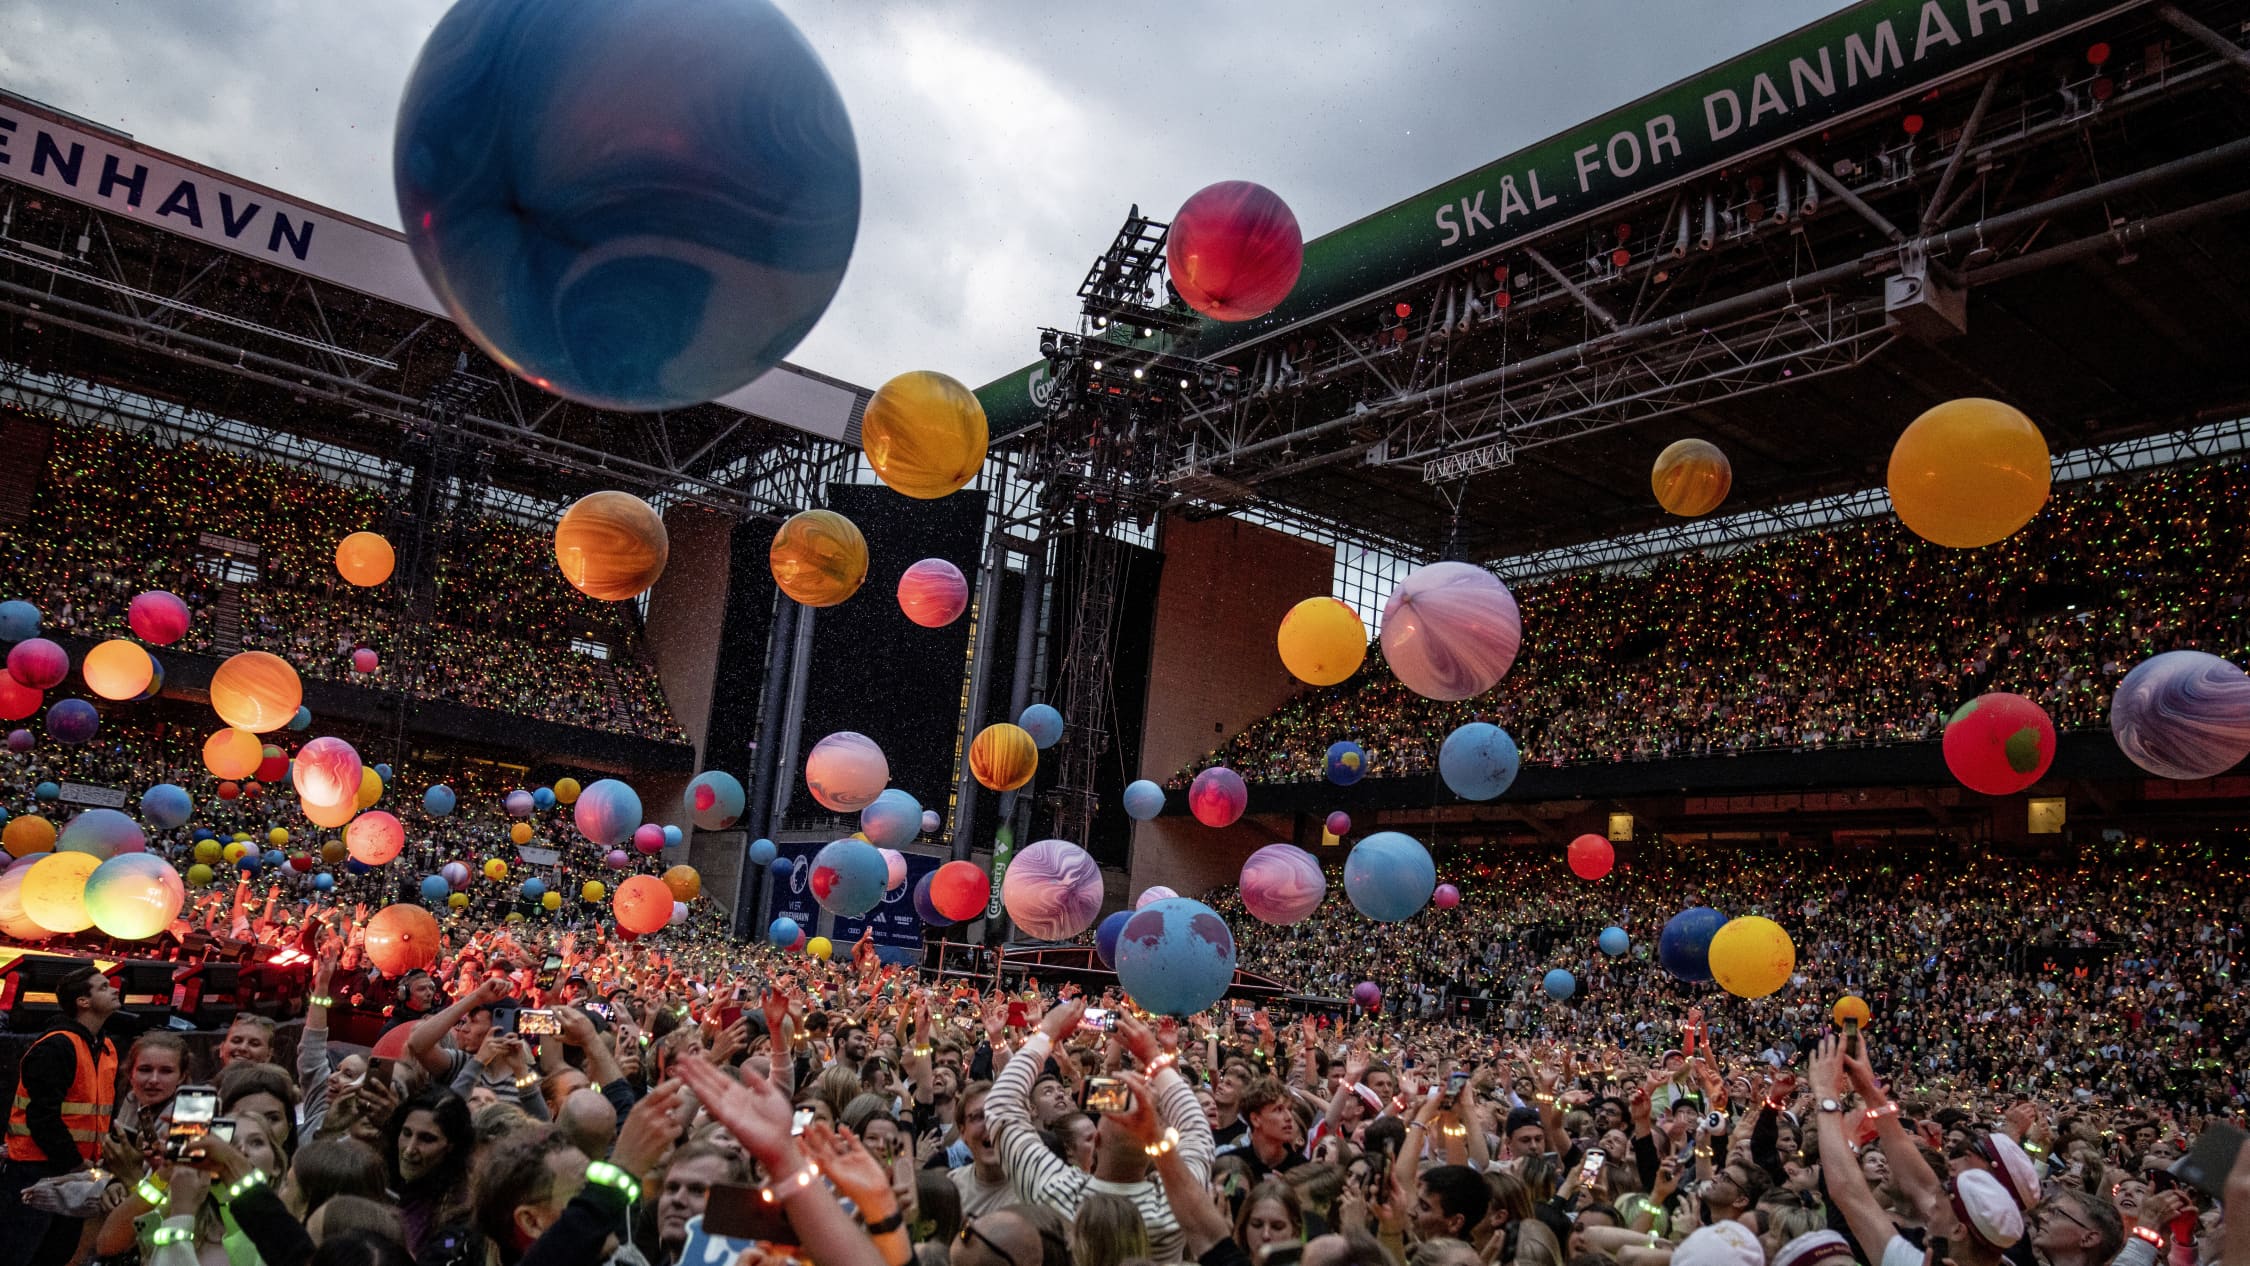 Coldplayn yleisöä. Ilmassa on paljon eri värisiä palloja.